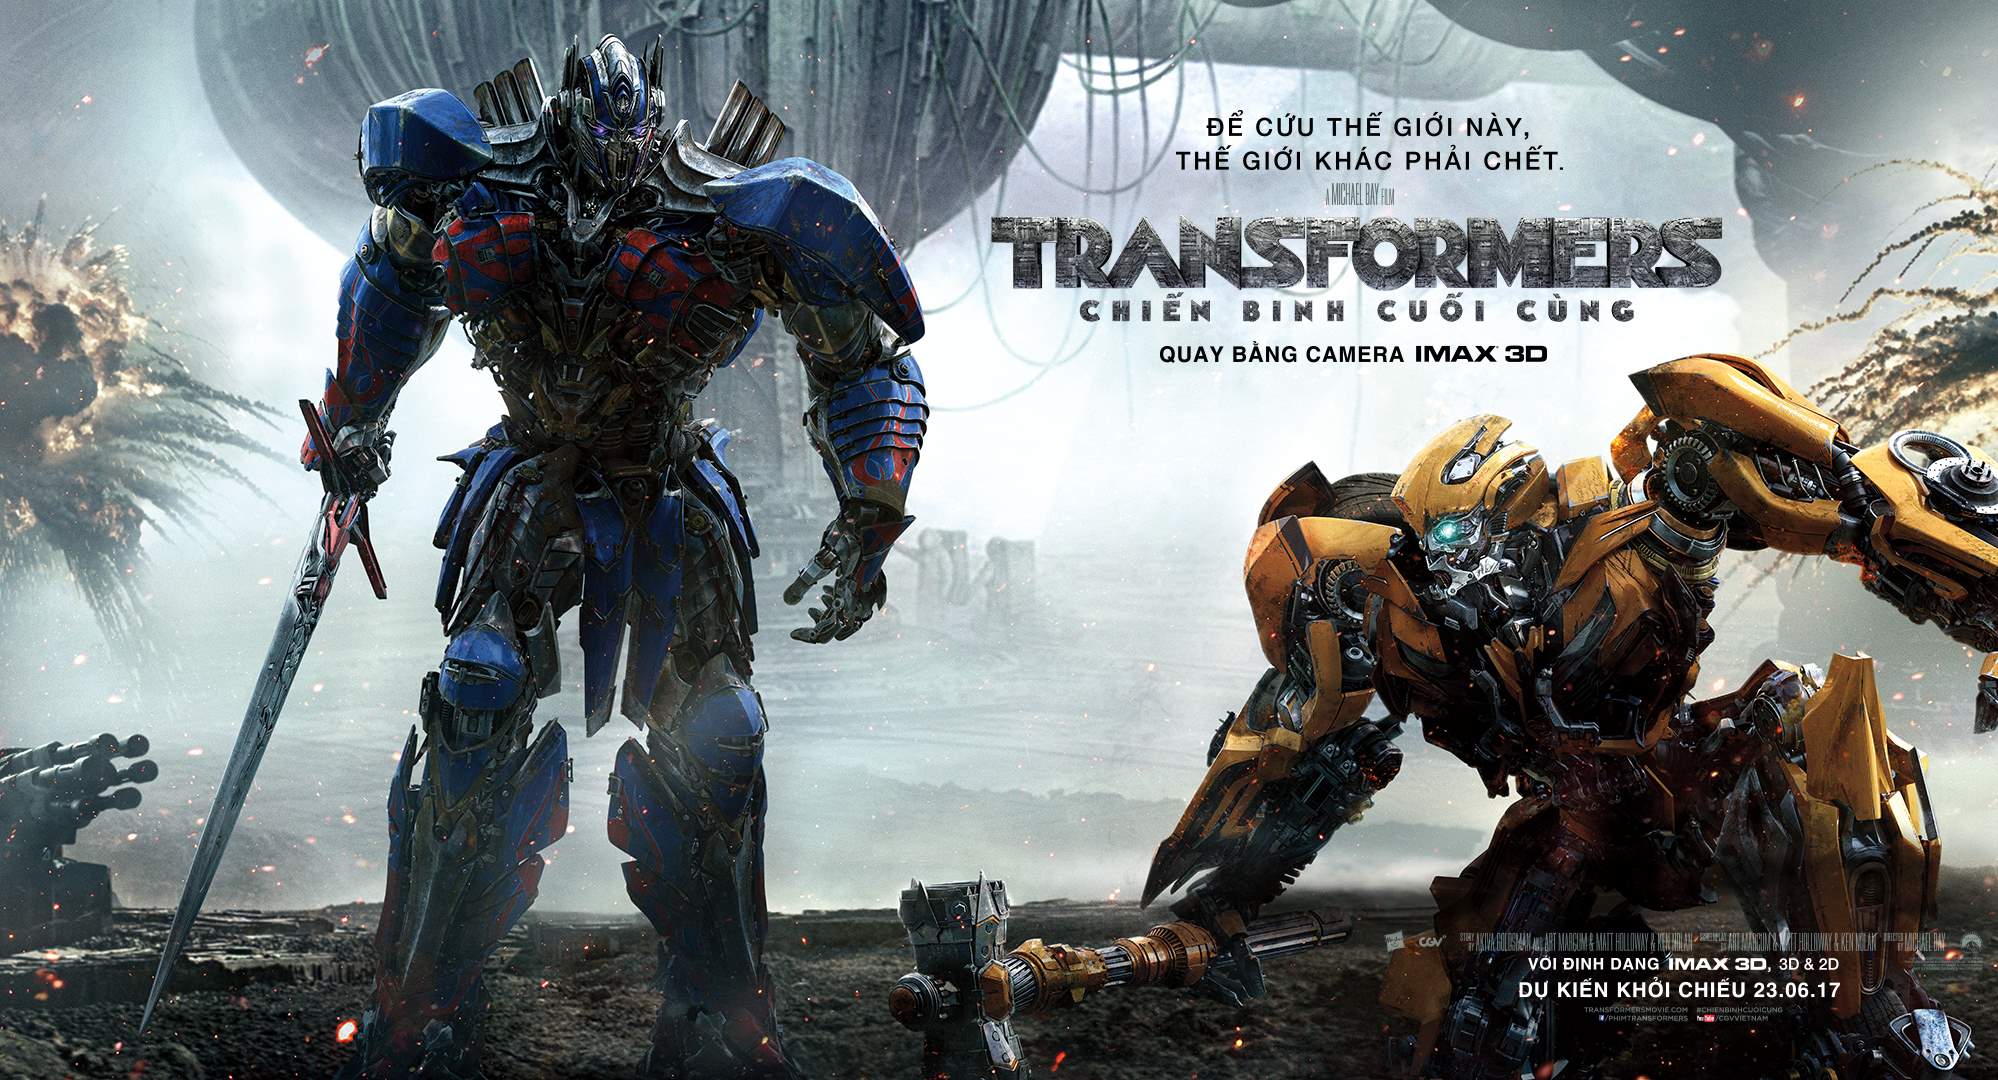 Đừng bỏ lỡ cơ hội có được vé dự công chiếu phim Transformers The Last Knight. Đây là một trong những bộ phim kinh điển nhất của loạt phim về các robot hấp dẫn này. Nhanh tay đặt vé để trở thành người đầu tiên xem những câu chuyện phiêu lưu đầy hồi hộp và cảm xúc này.